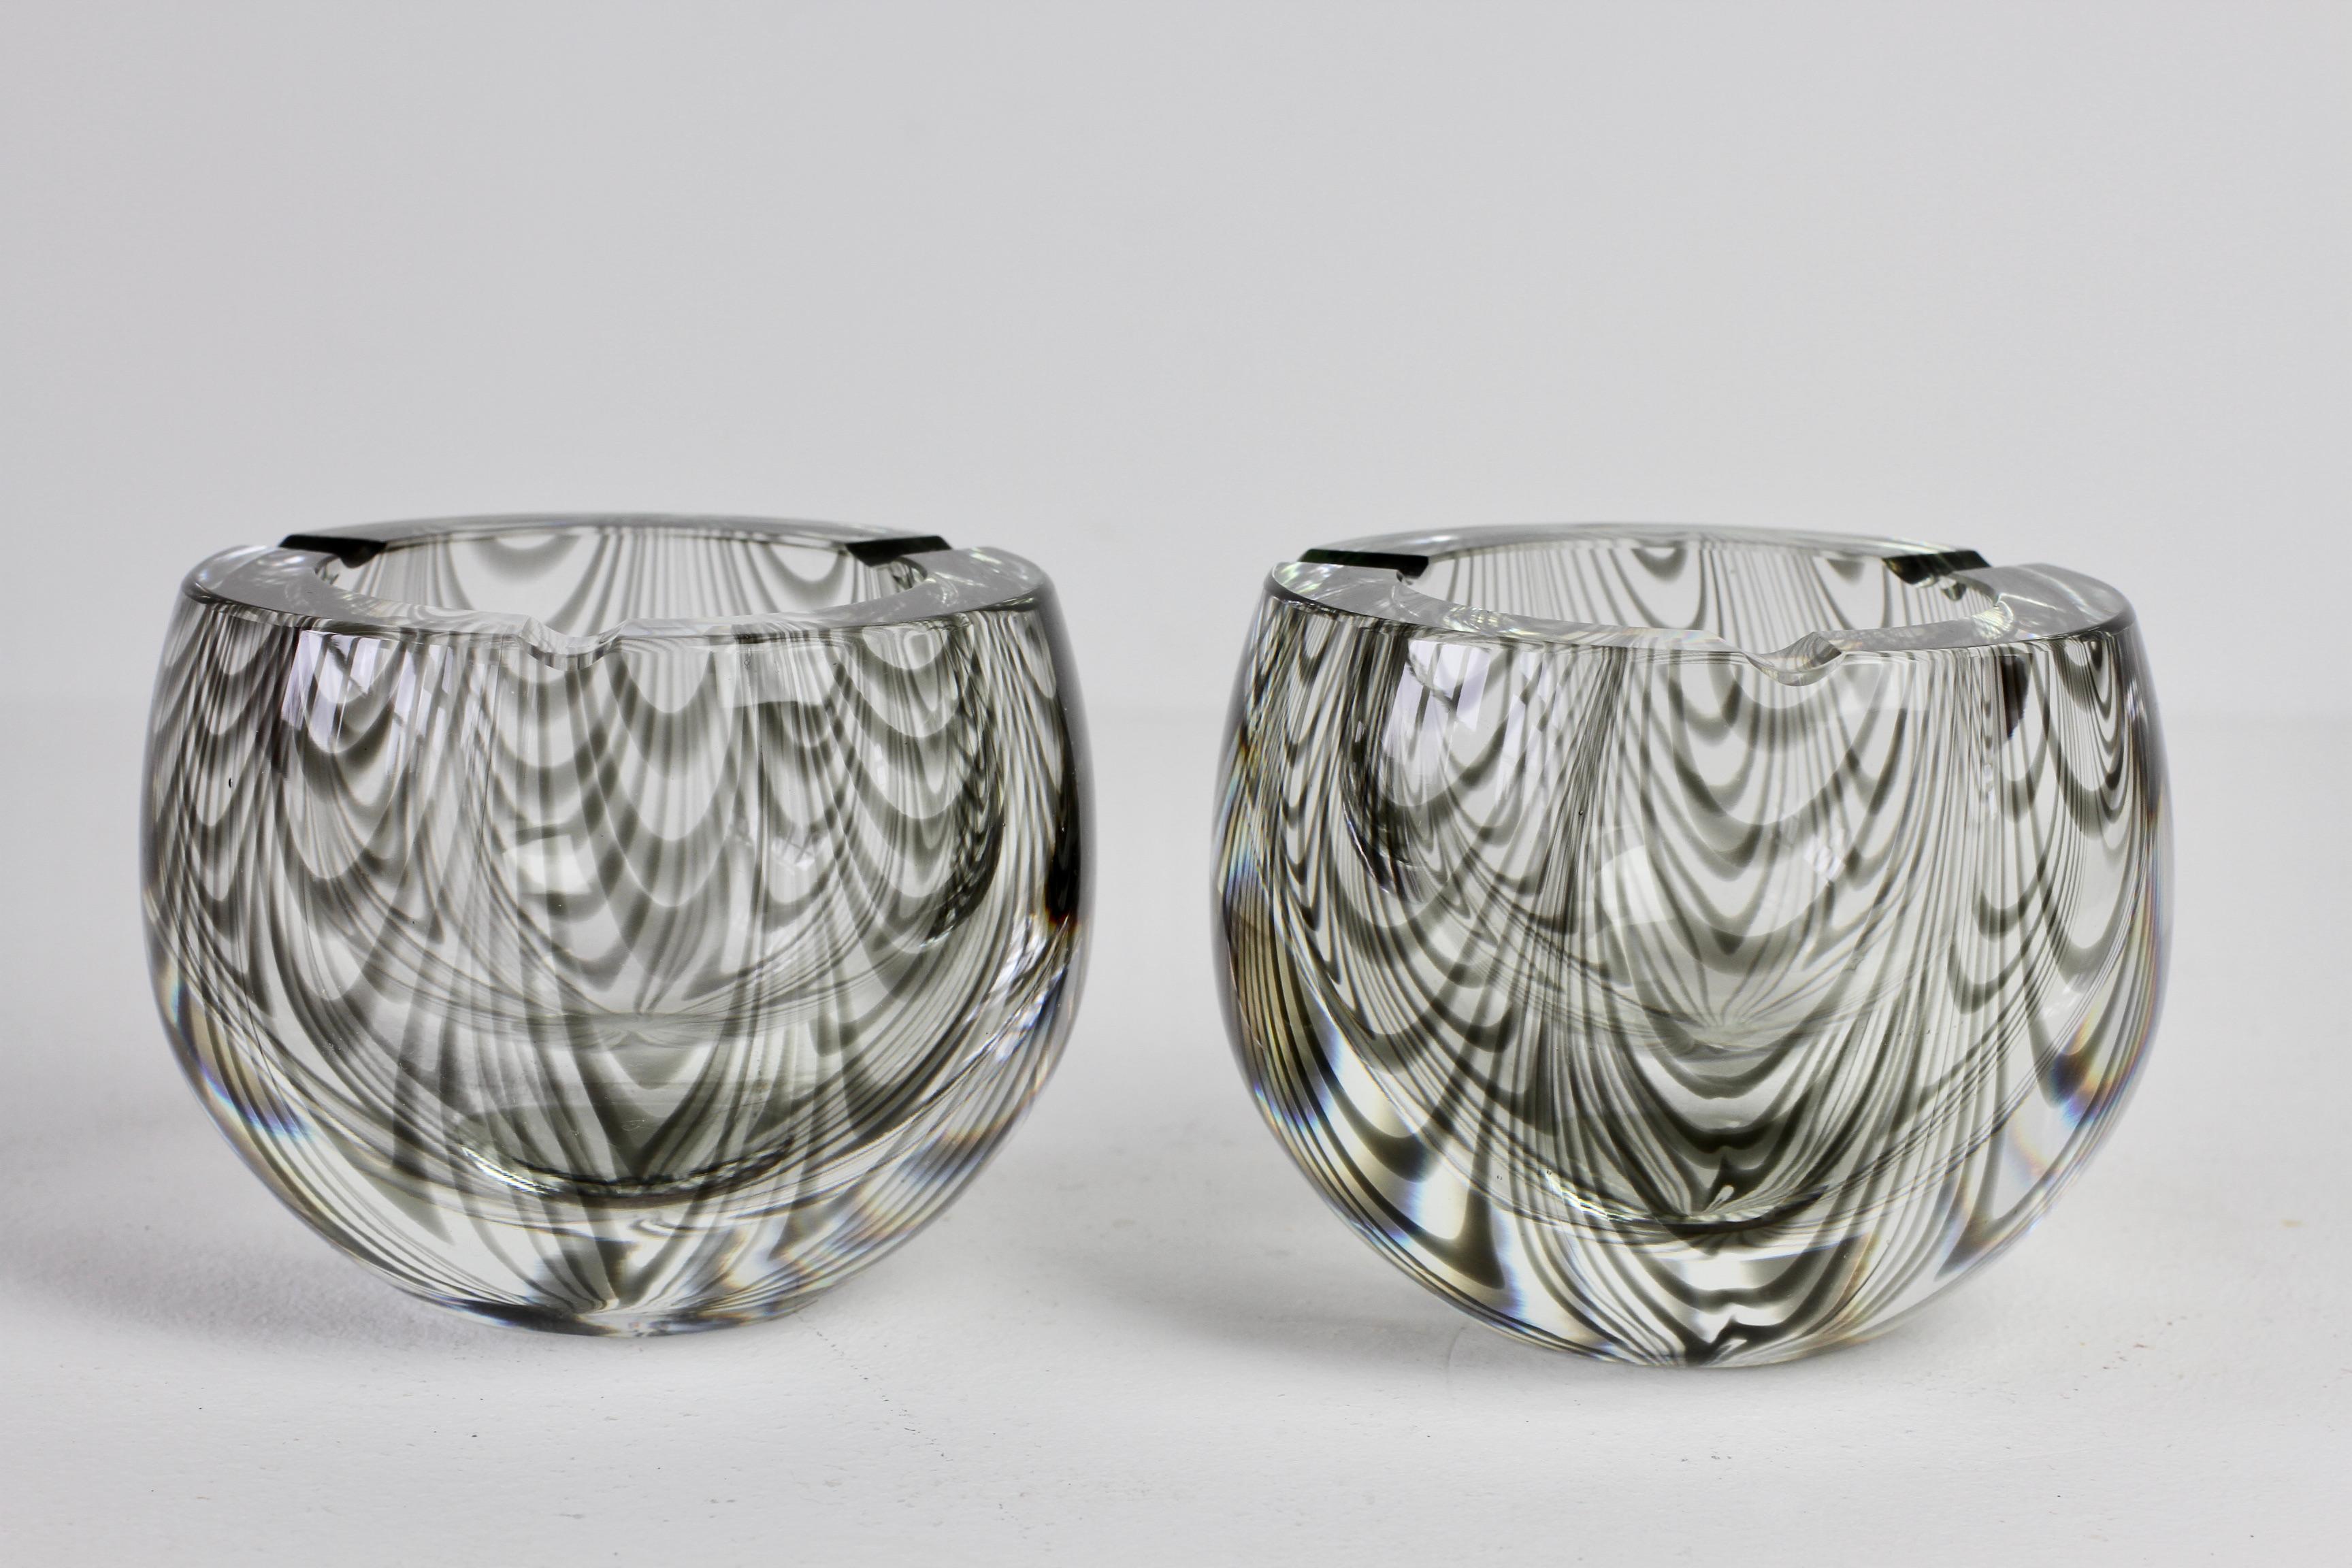 Antonio da Ros (attribué) pour Cenedese rare paire de cendriers en verre de Murano, datant de 1965-1975, de style moderne du milieu du siècle. Ces lourdes pièces de verre présentent un design asymétrique de rayures 